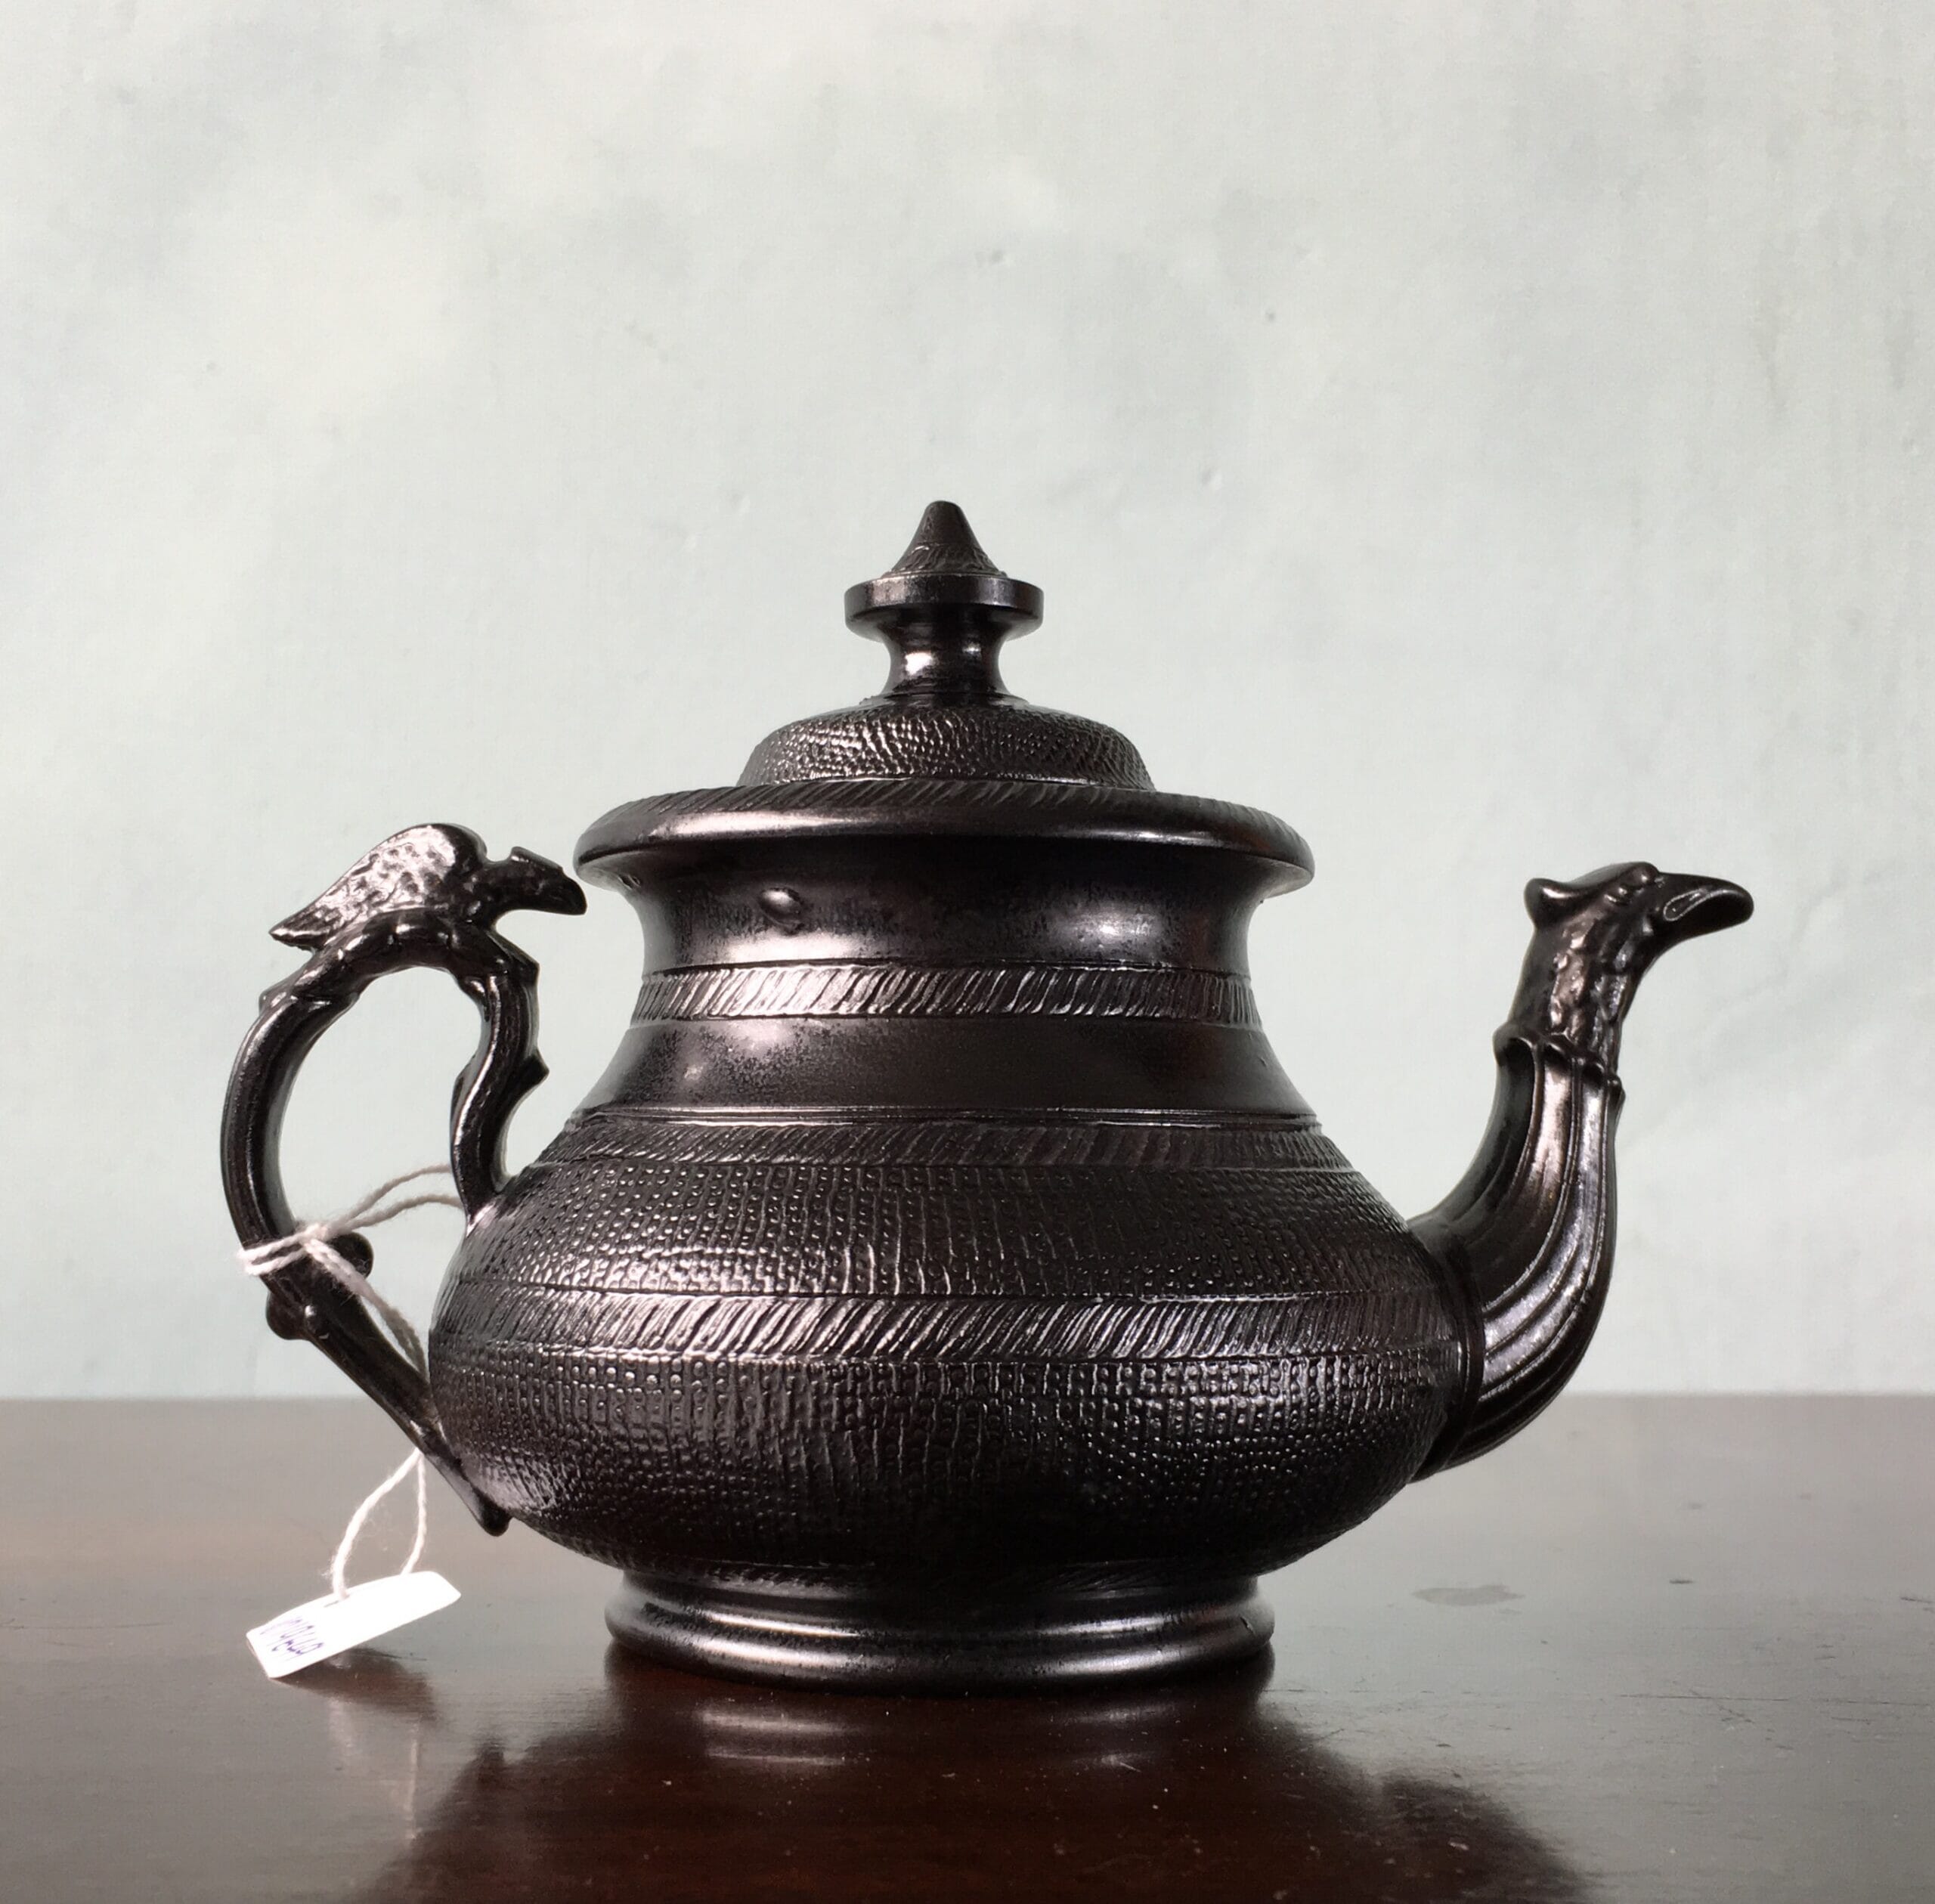 Cyples 'Egyptian Black' teapot, bird handle, 1835-0